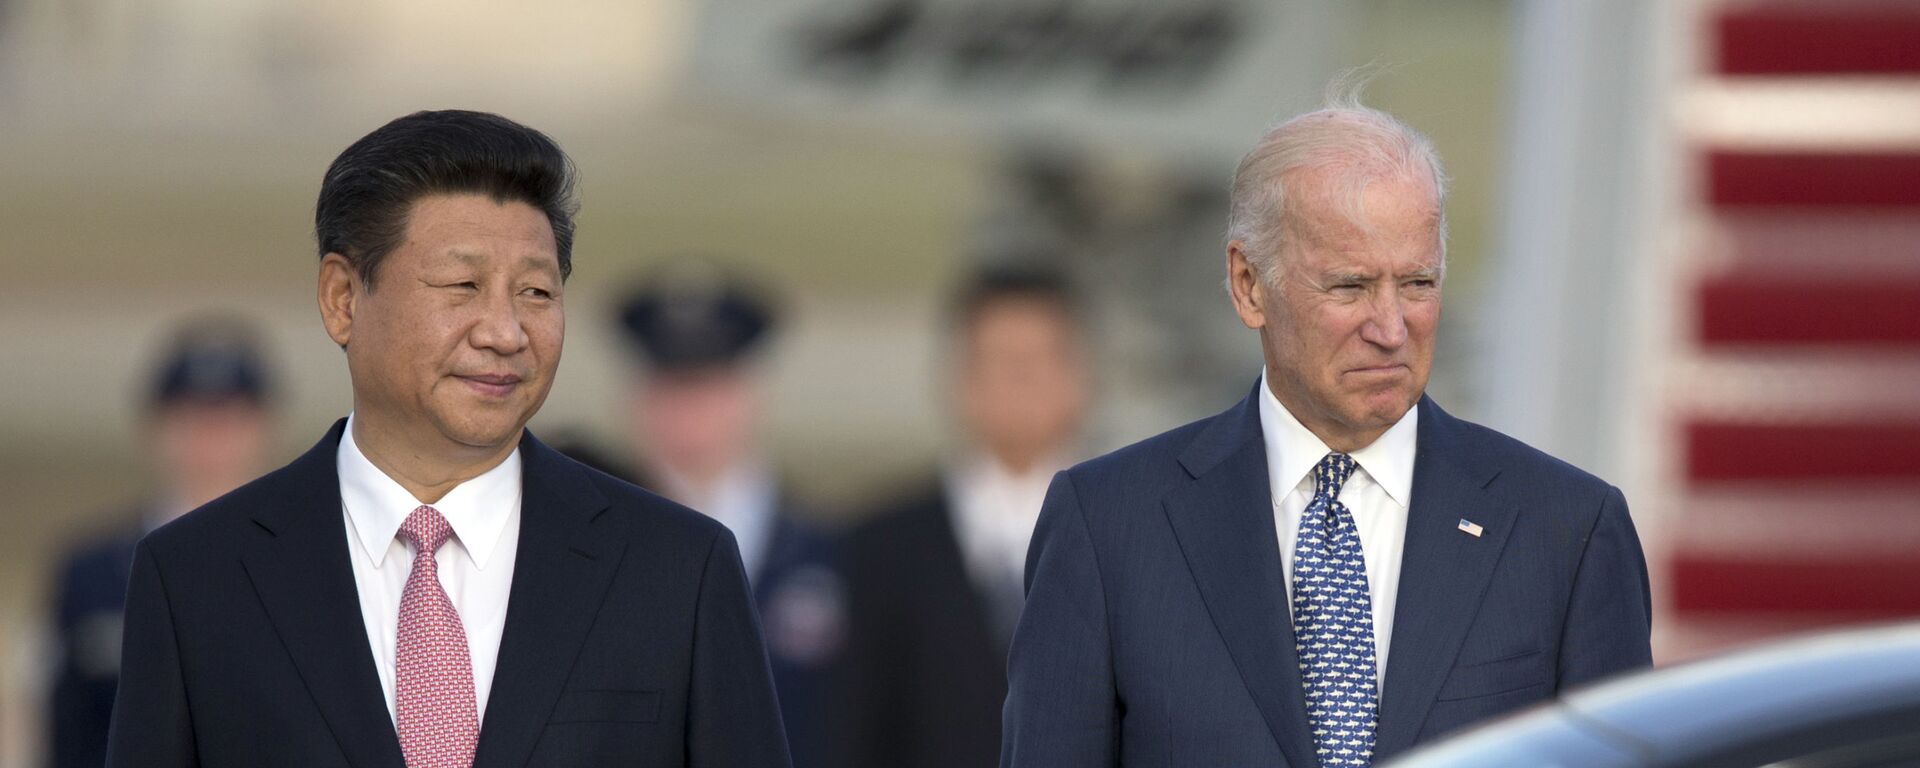 Chủ tịch nước Cộng hòa Nhân dân Trung Hoa Tập Cận Bình và Phó Tổng thống Hoa Kỳ Joe Biden tại Washington, năm 2015. - Sputnik Việt Nam, 1920, 22.03.2021